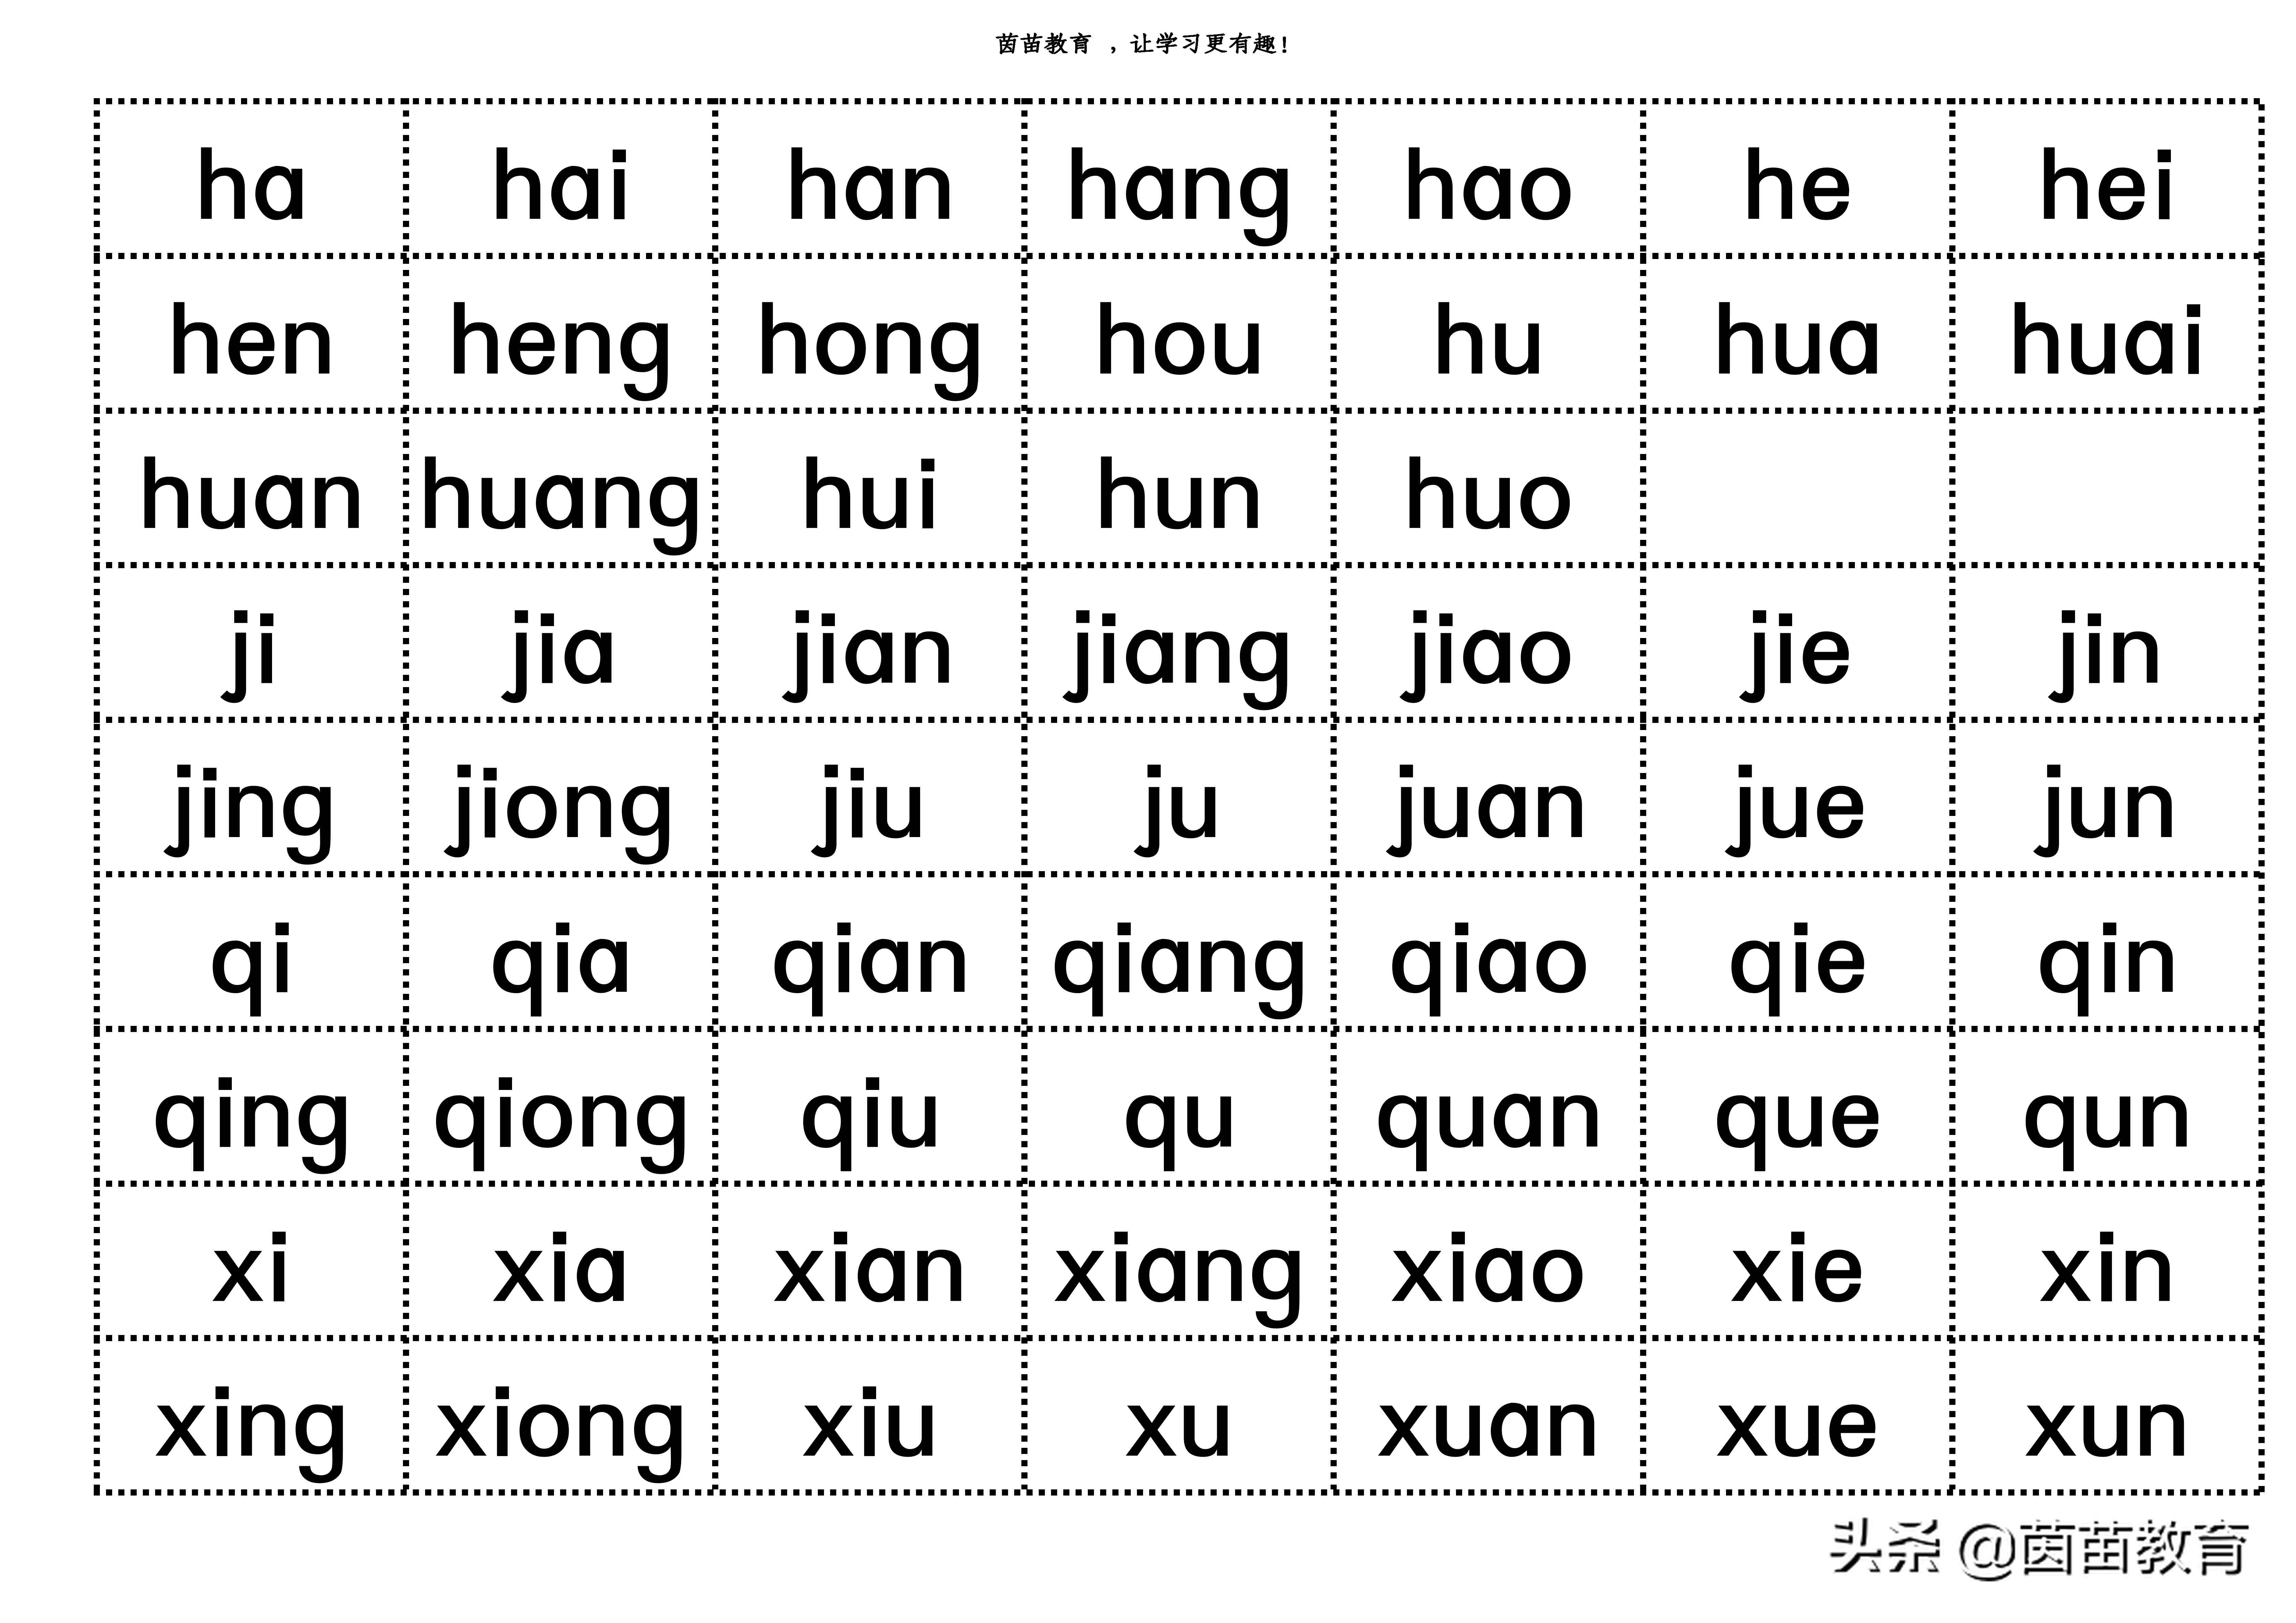 如何学好汉语拼音？听听老师怎么说？